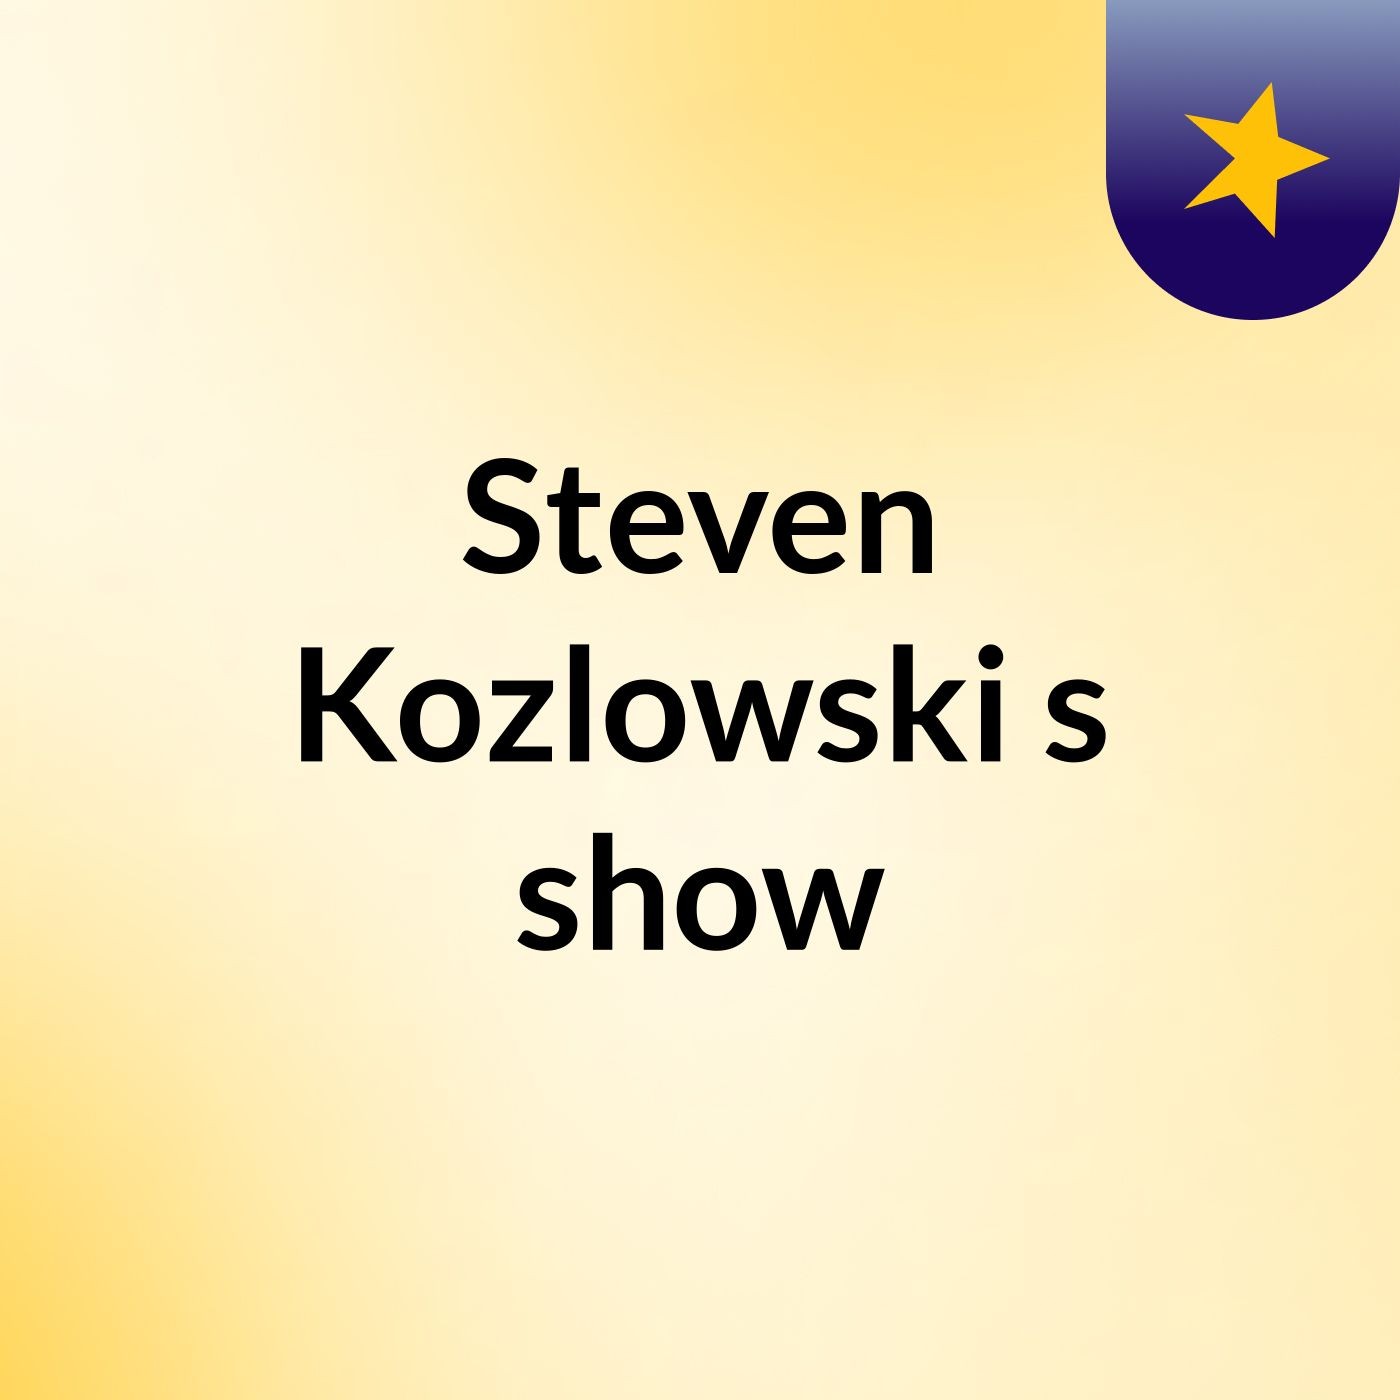 Steven Kozlowski's show